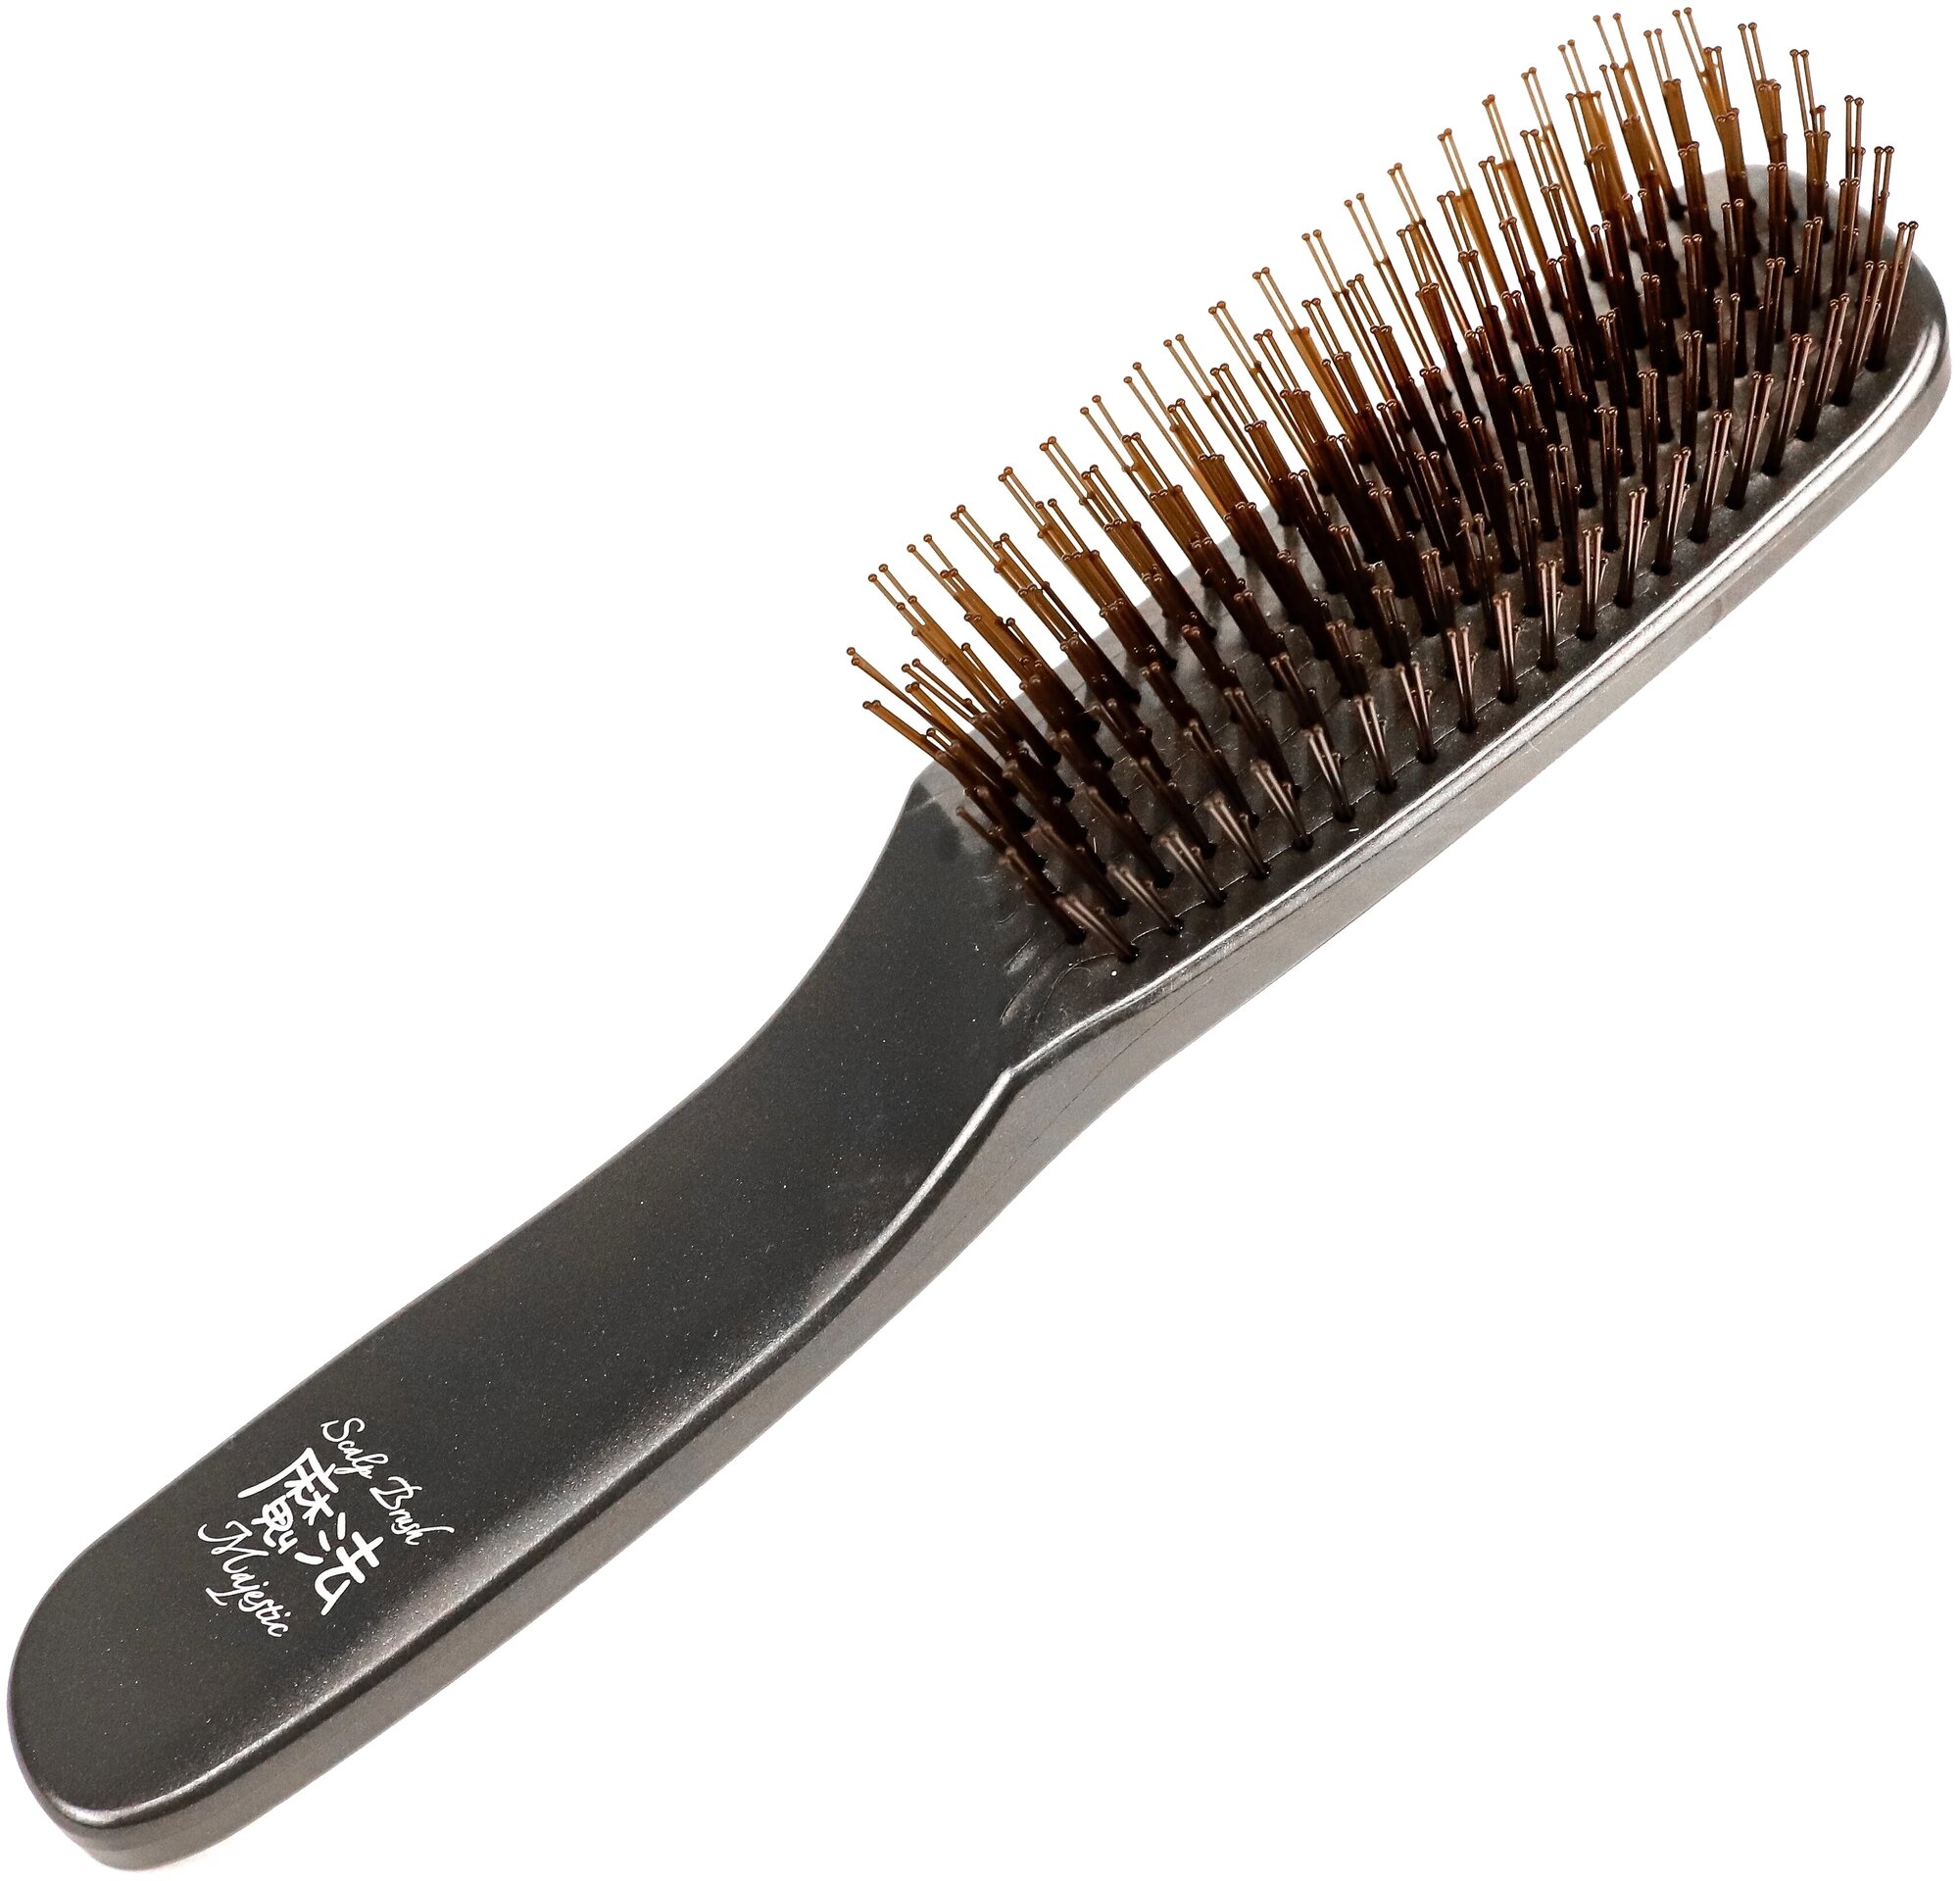 Японская трихологическая универсальная расческа для волос Majestic Graphite массажка для мытья головы, распутывание волос, 568 зубчиков.